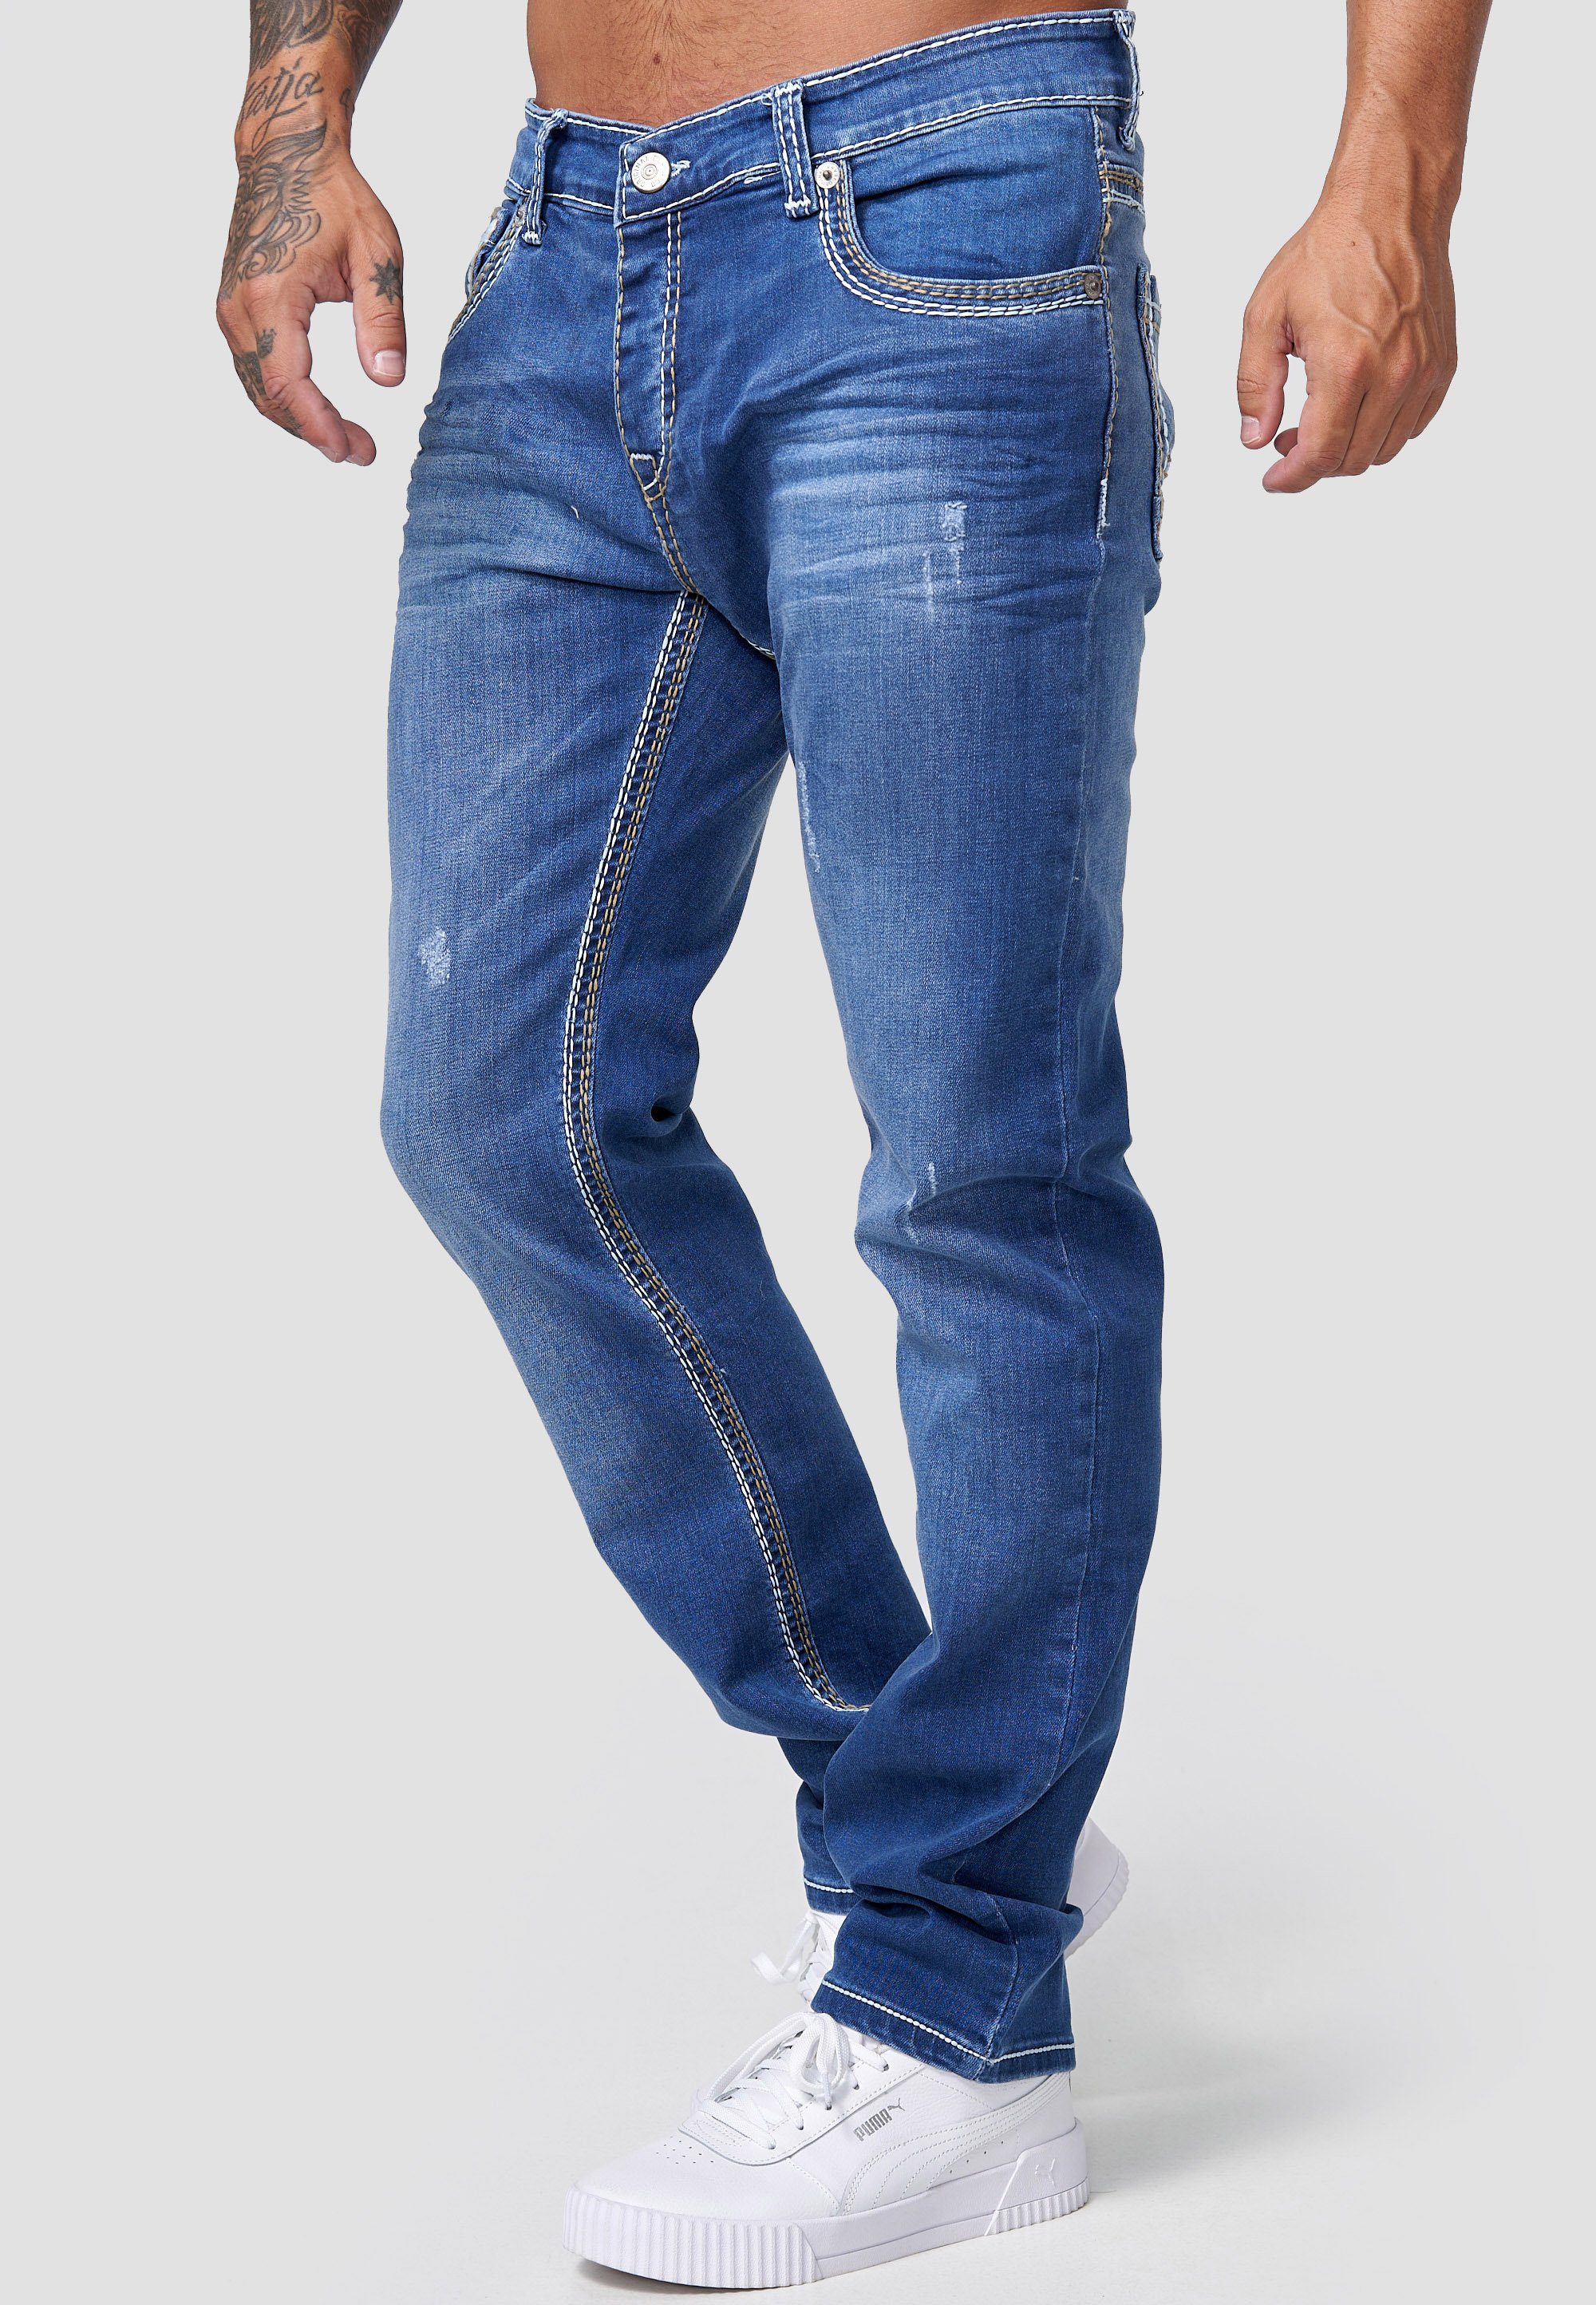 Designerjeans Regular Herren Slim Hose Jeans Regular-fit-Jeans Denim Fit Männer Code47 Fit